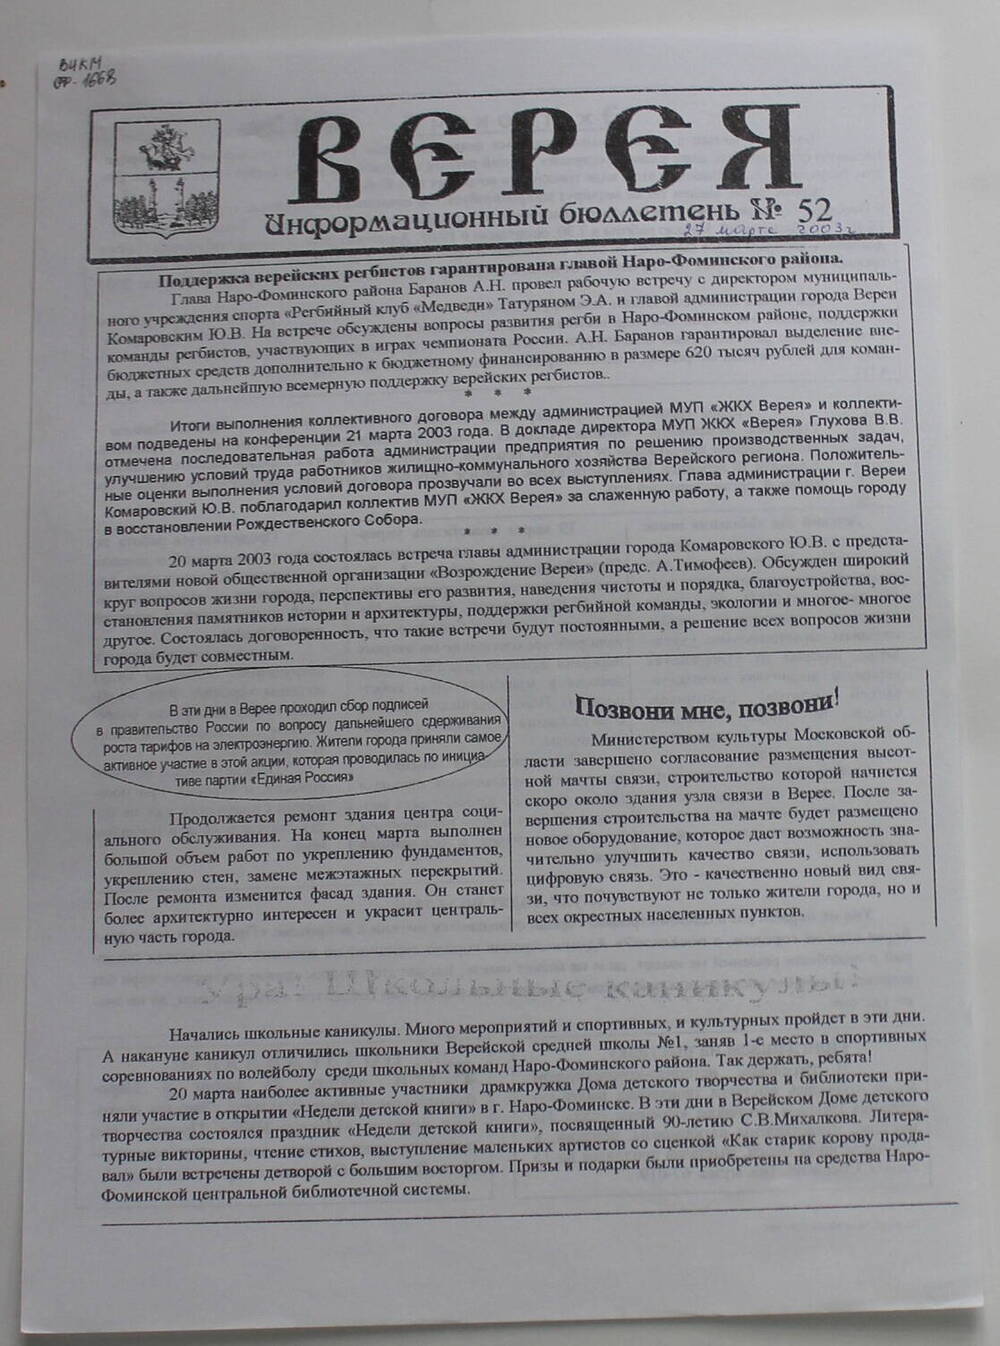 Информационный бюллетень администрации города Вереи №52 ВЕРЕЯ   
27  марта 2003 г.